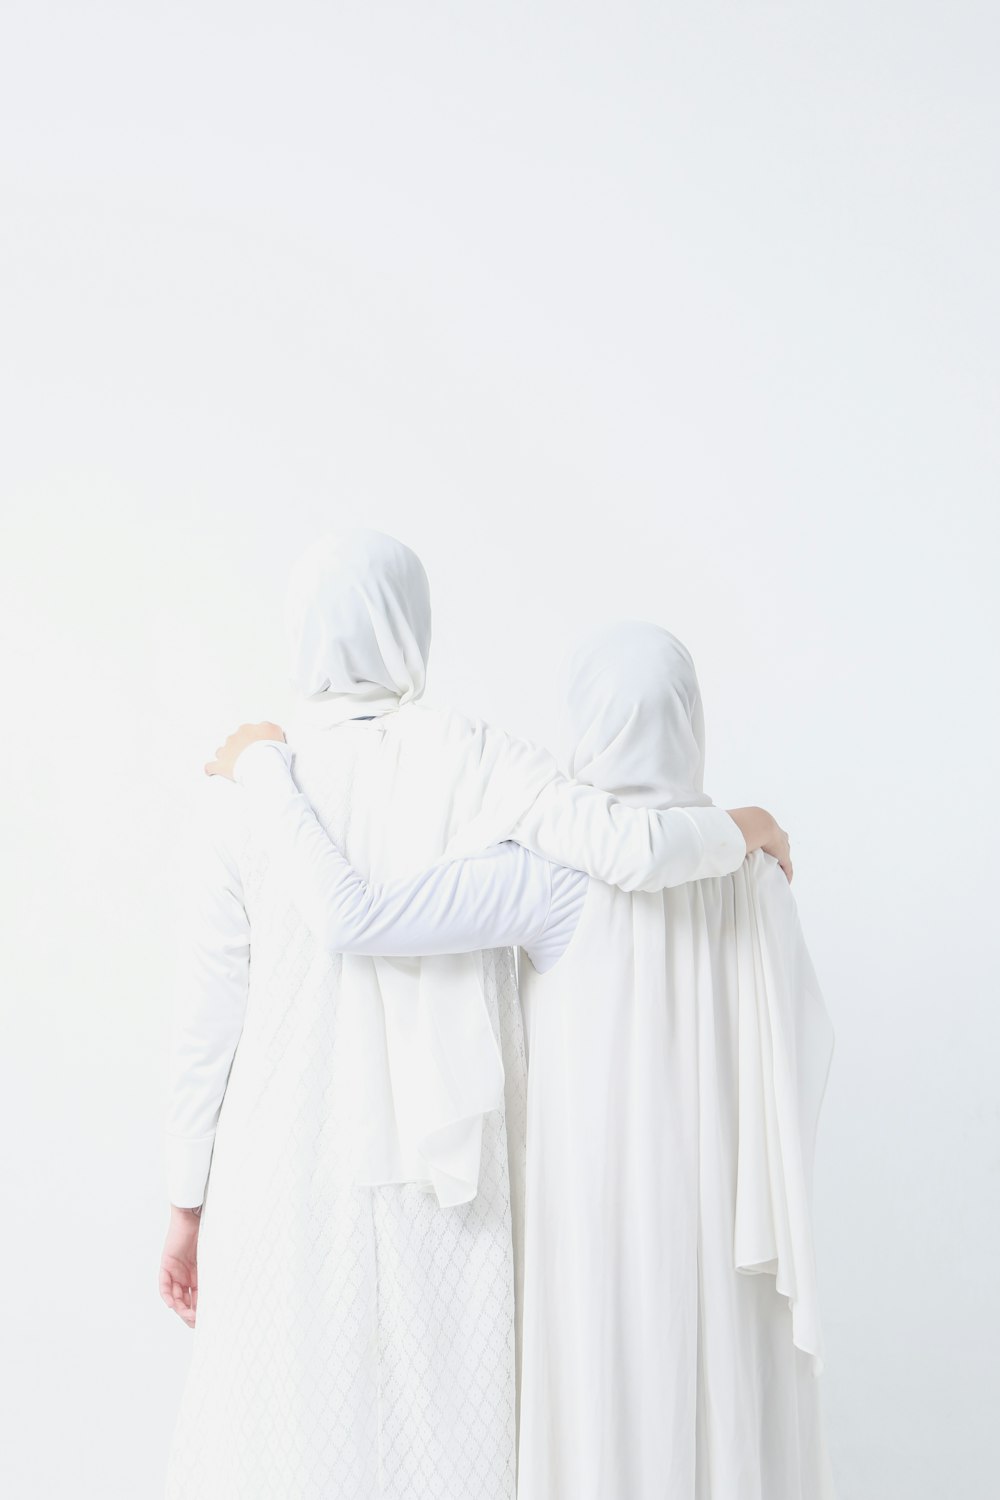 duas mulheres vestidas de branco em pé uma ao lado da outra